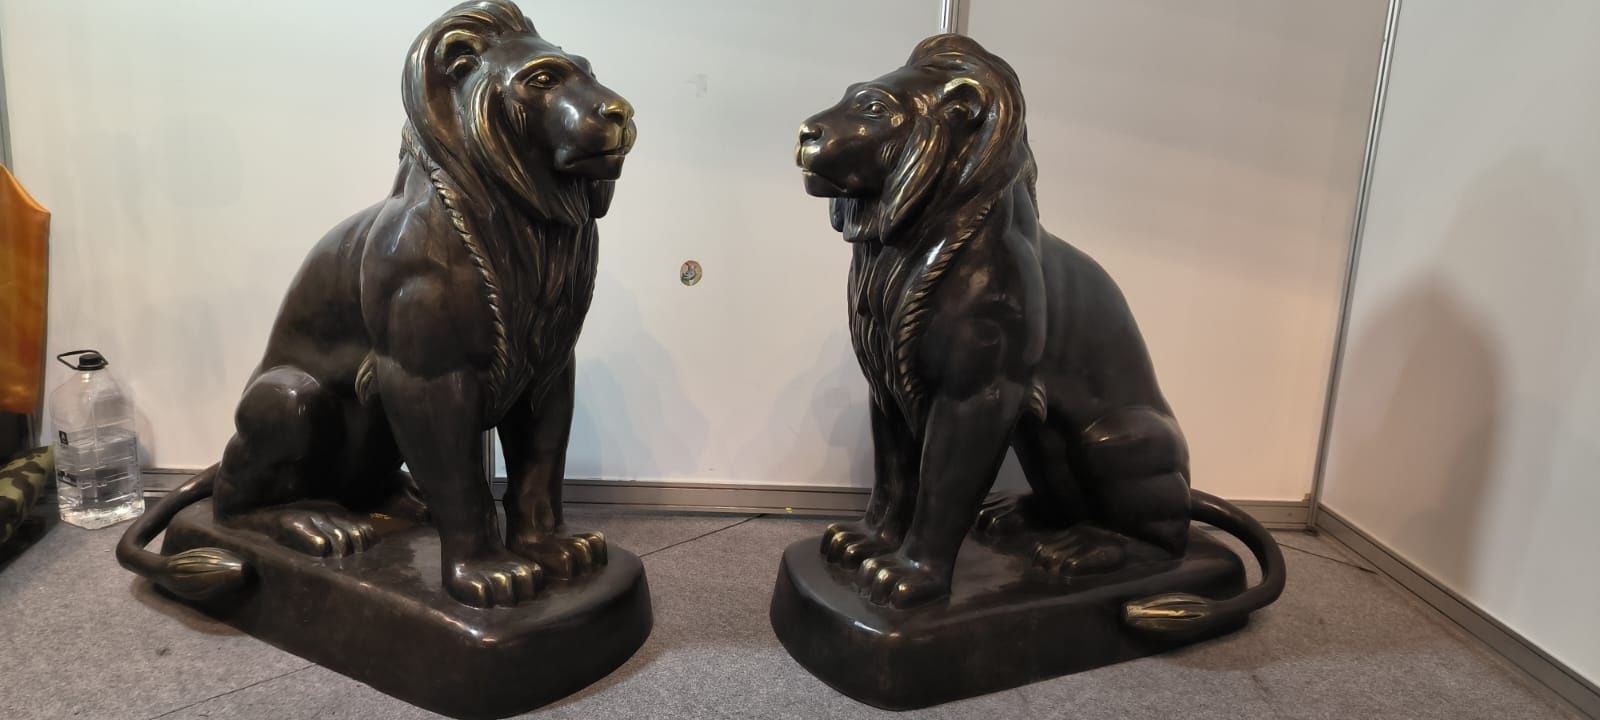 Două sculpturi bronz de mari dimensiuni